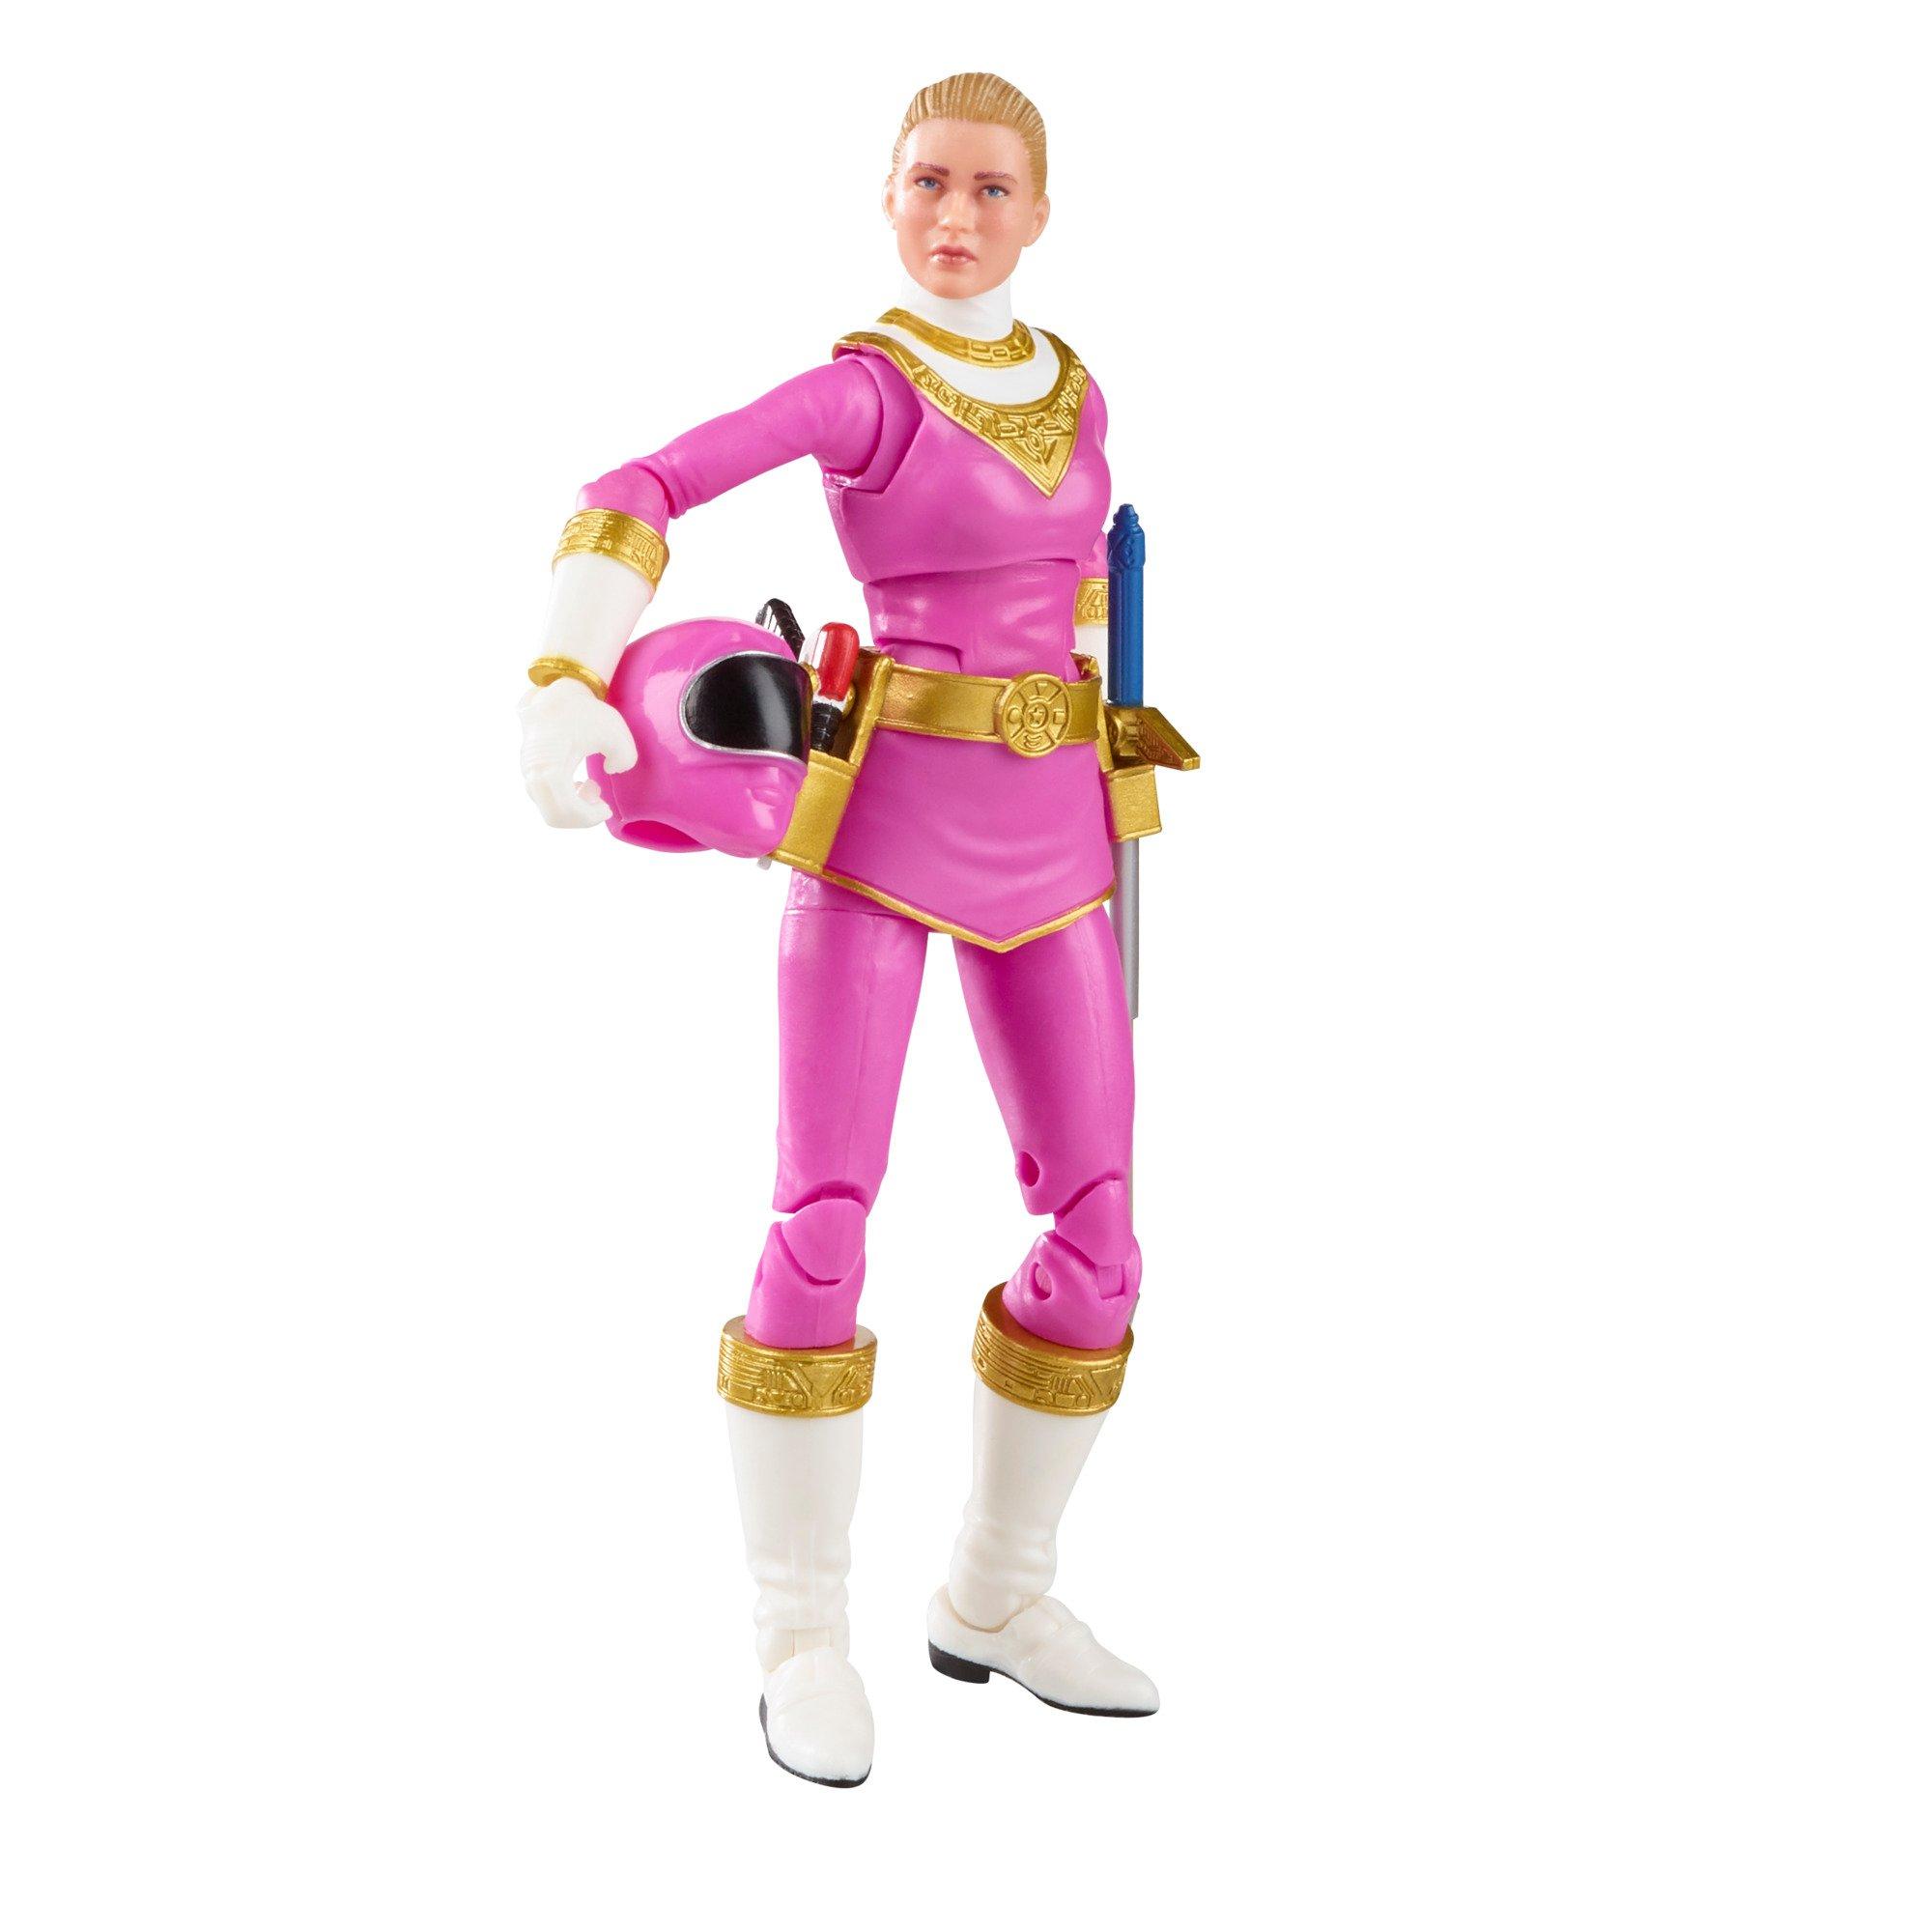 list item 6 of 10 Hasbro Mighty Morphin Power Rangers Pink Ranger and Zeo Pink Ranger Set 6-in Action Figure GameStop Exclusive